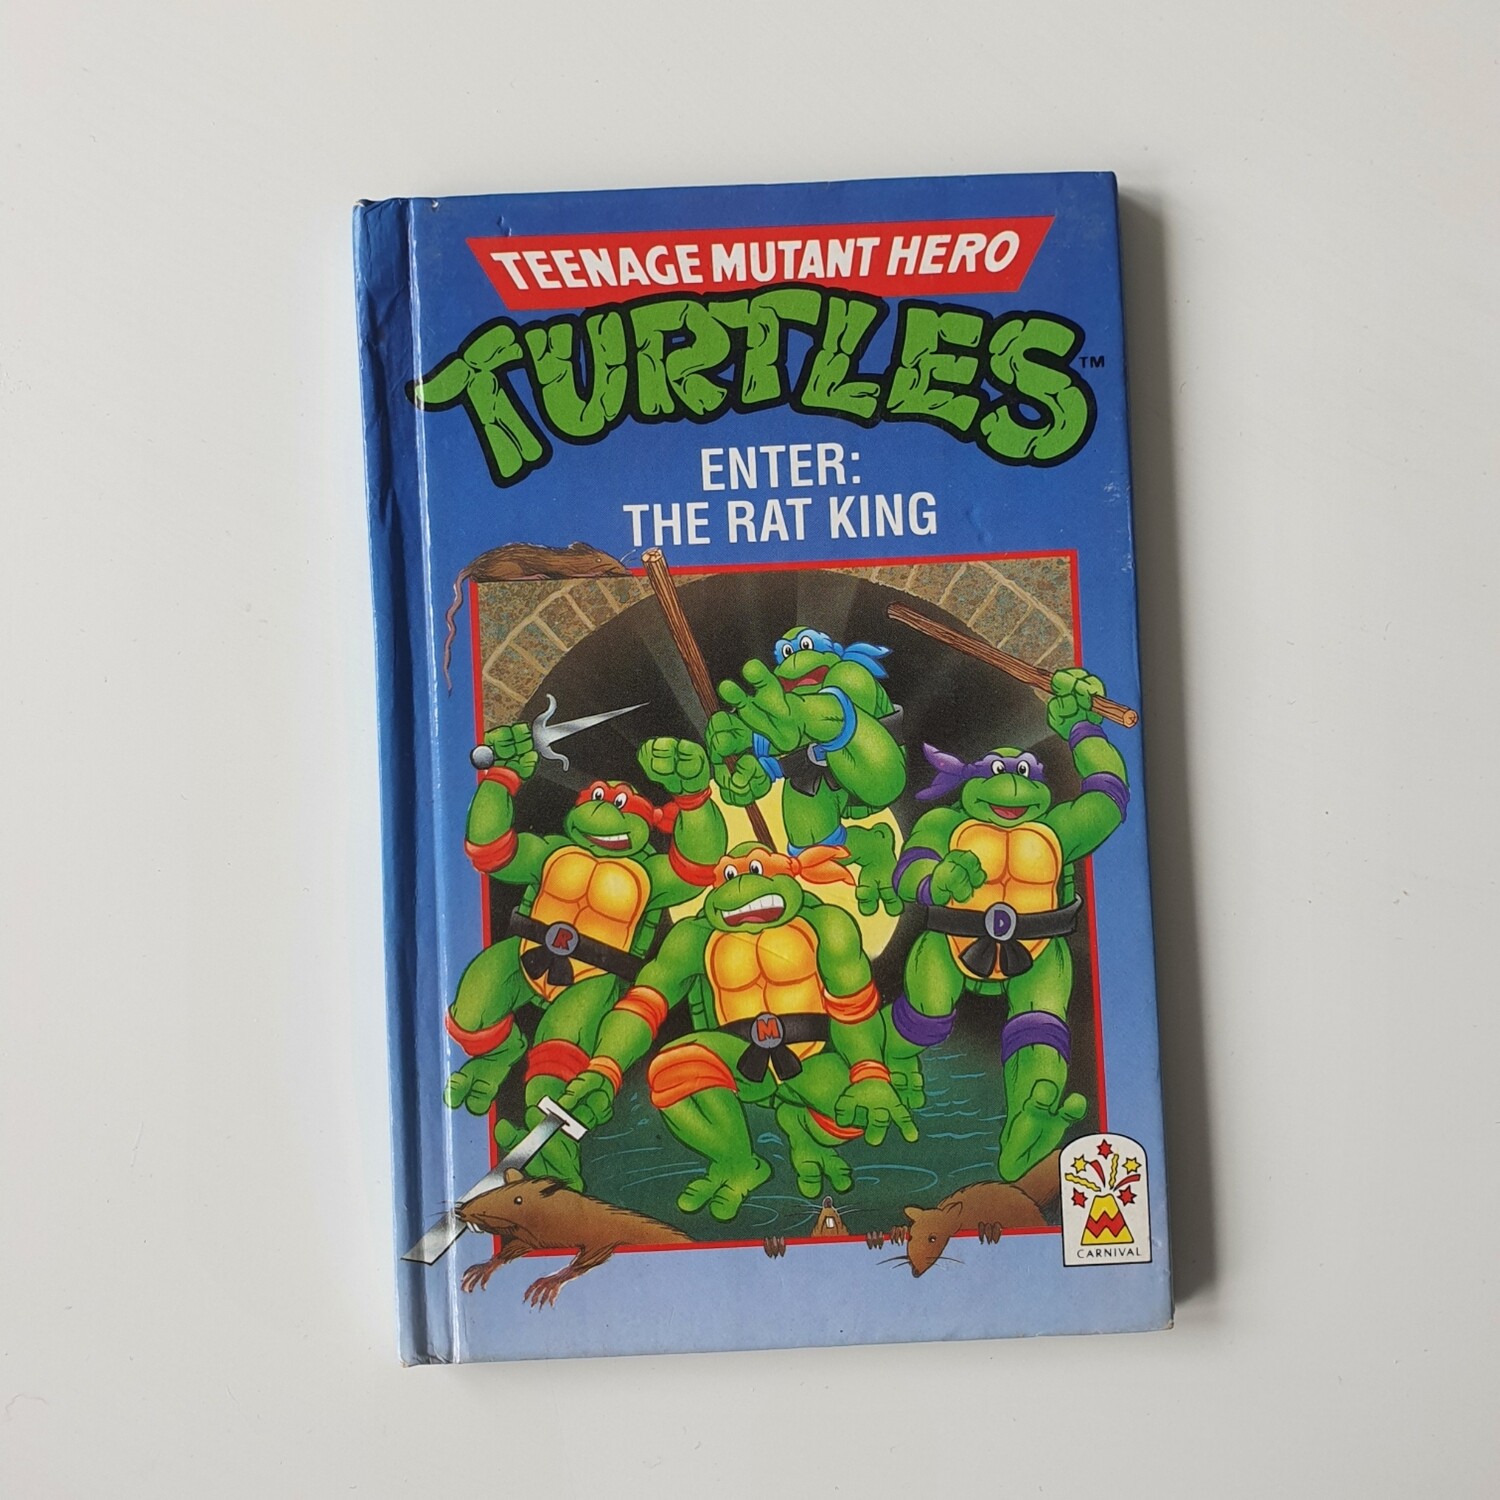 Teenage Mutant Hero Turtles - Enter: The Rat King